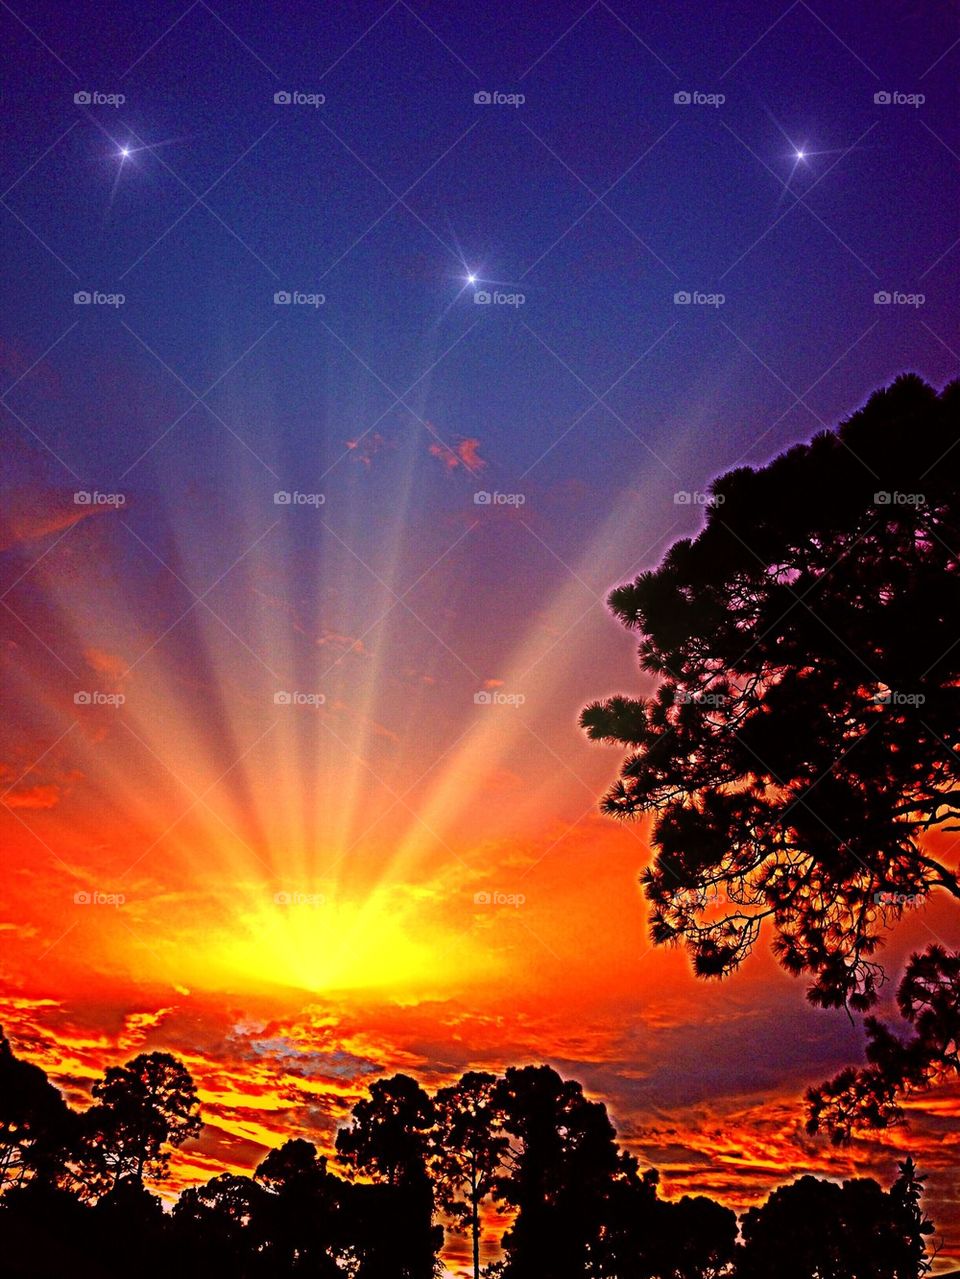 Starlight sunset